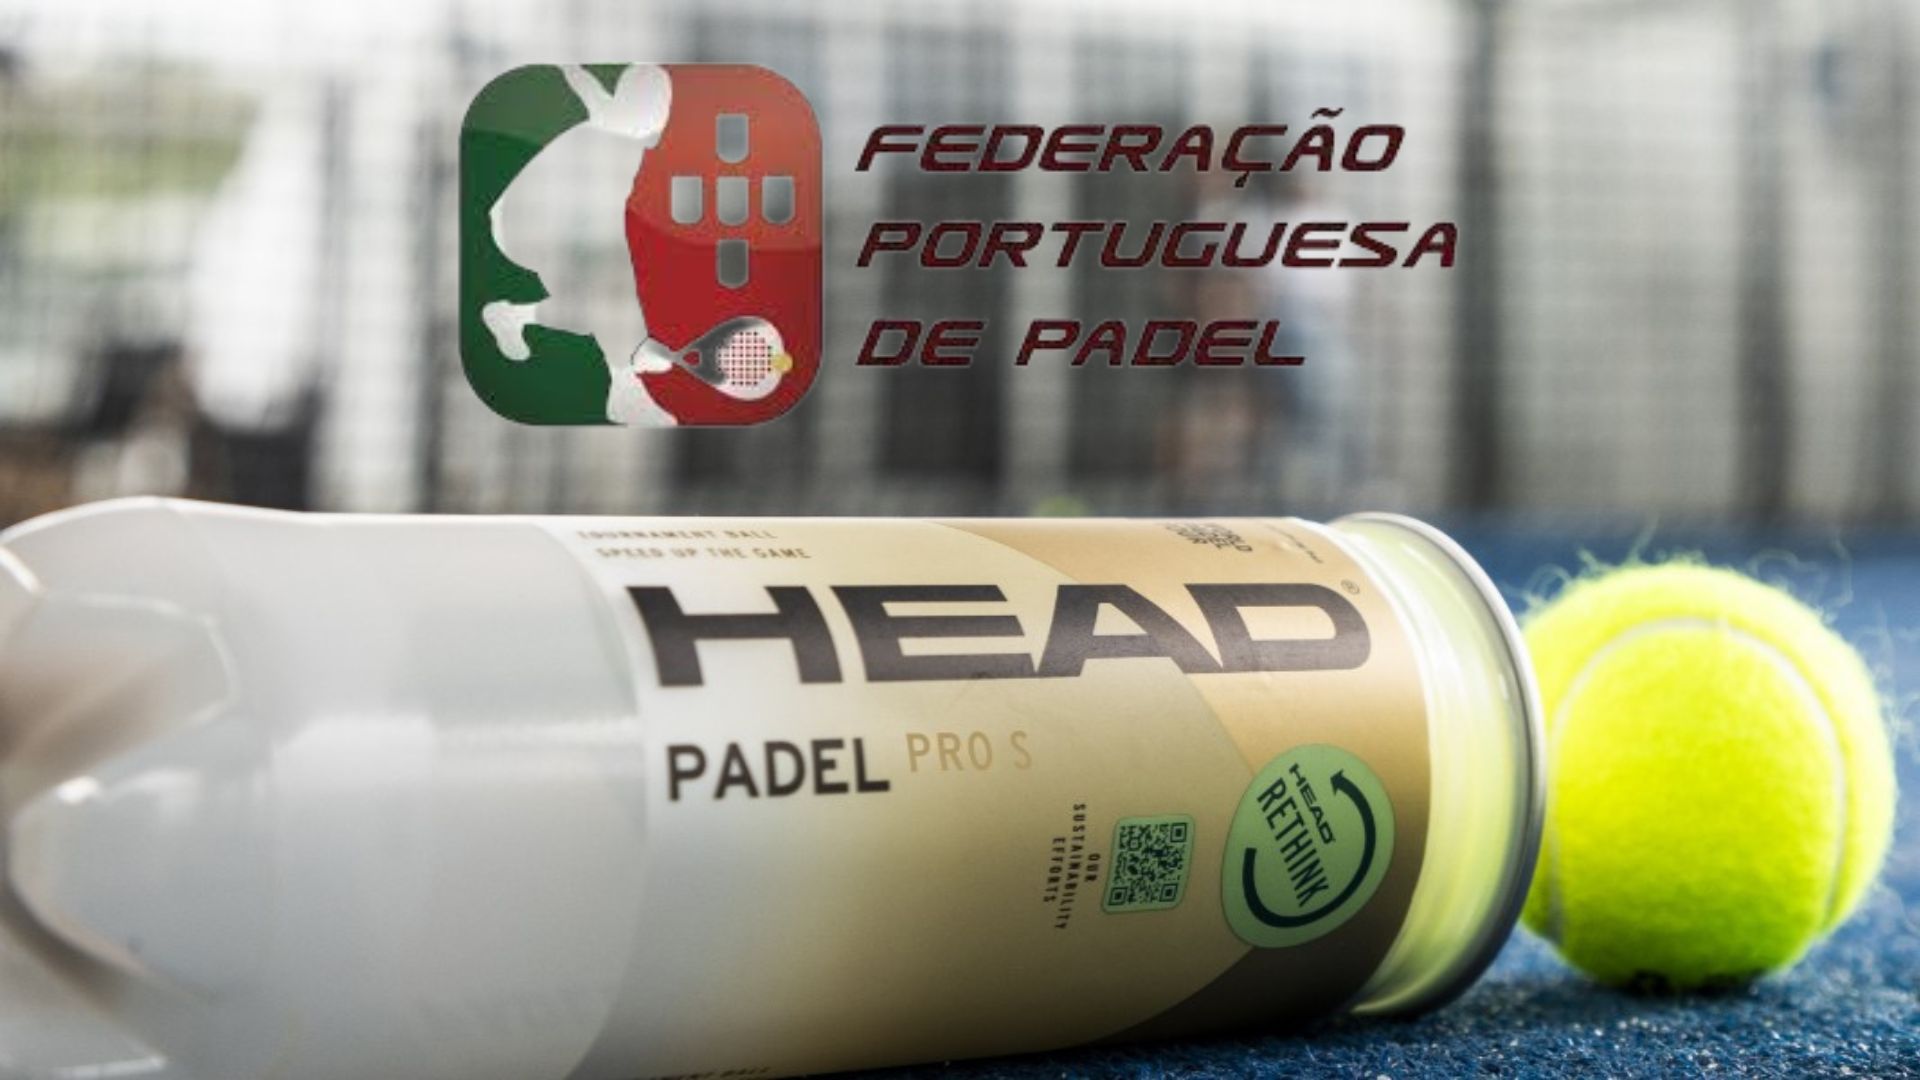 Head verlengt haar contract met de Portugese Federatie van padel, met iets nieuws!